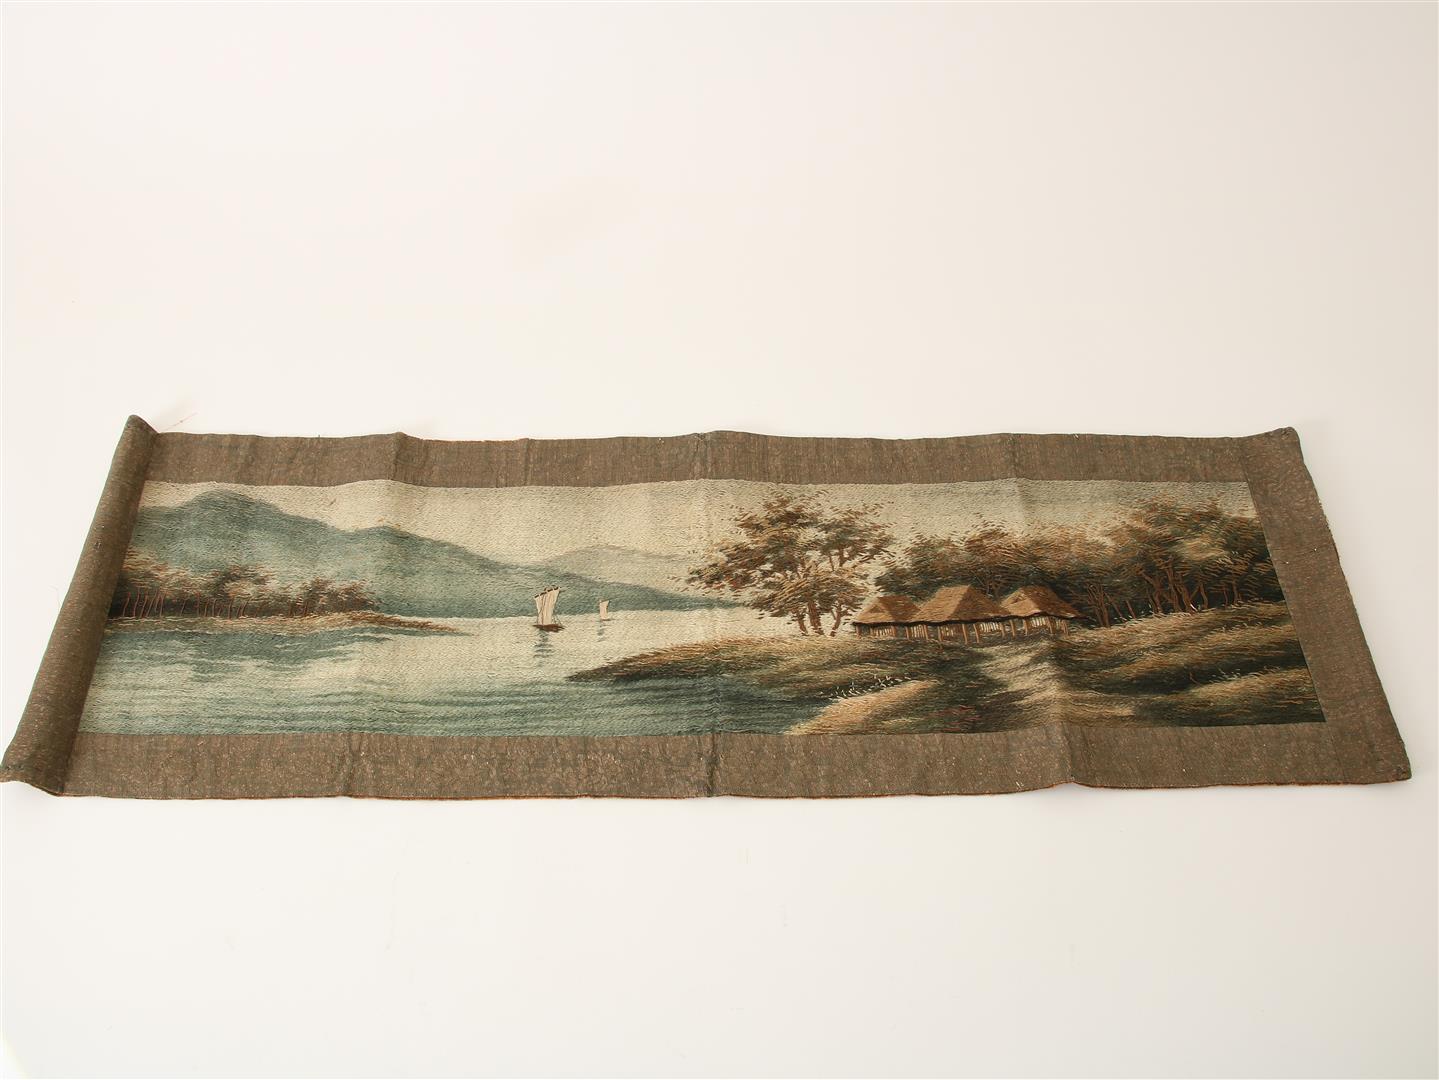 Geborduurde doek,met borduurwerk in zijde en voorstelling van een rivierlandschap met zeilschepen en